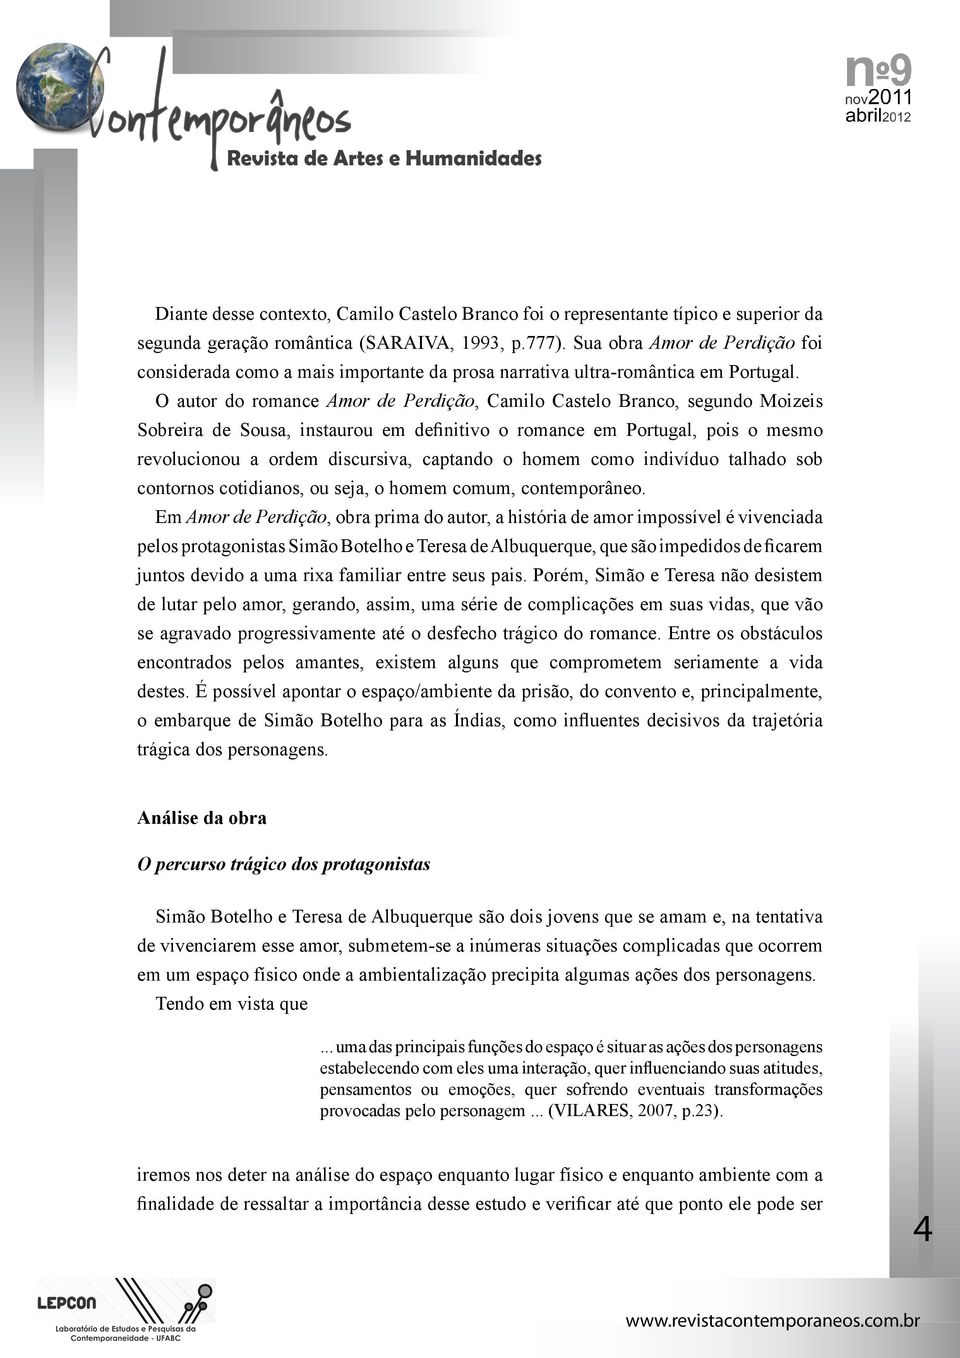 O autor do romance Amor de Perdição, Camilo Castelo Branco, segundo Moizeis Sobreira de Sousa, instaurou em definitivo o romance em Portugal, pois o mesmo revolucionou a ordem discursiva, captando o